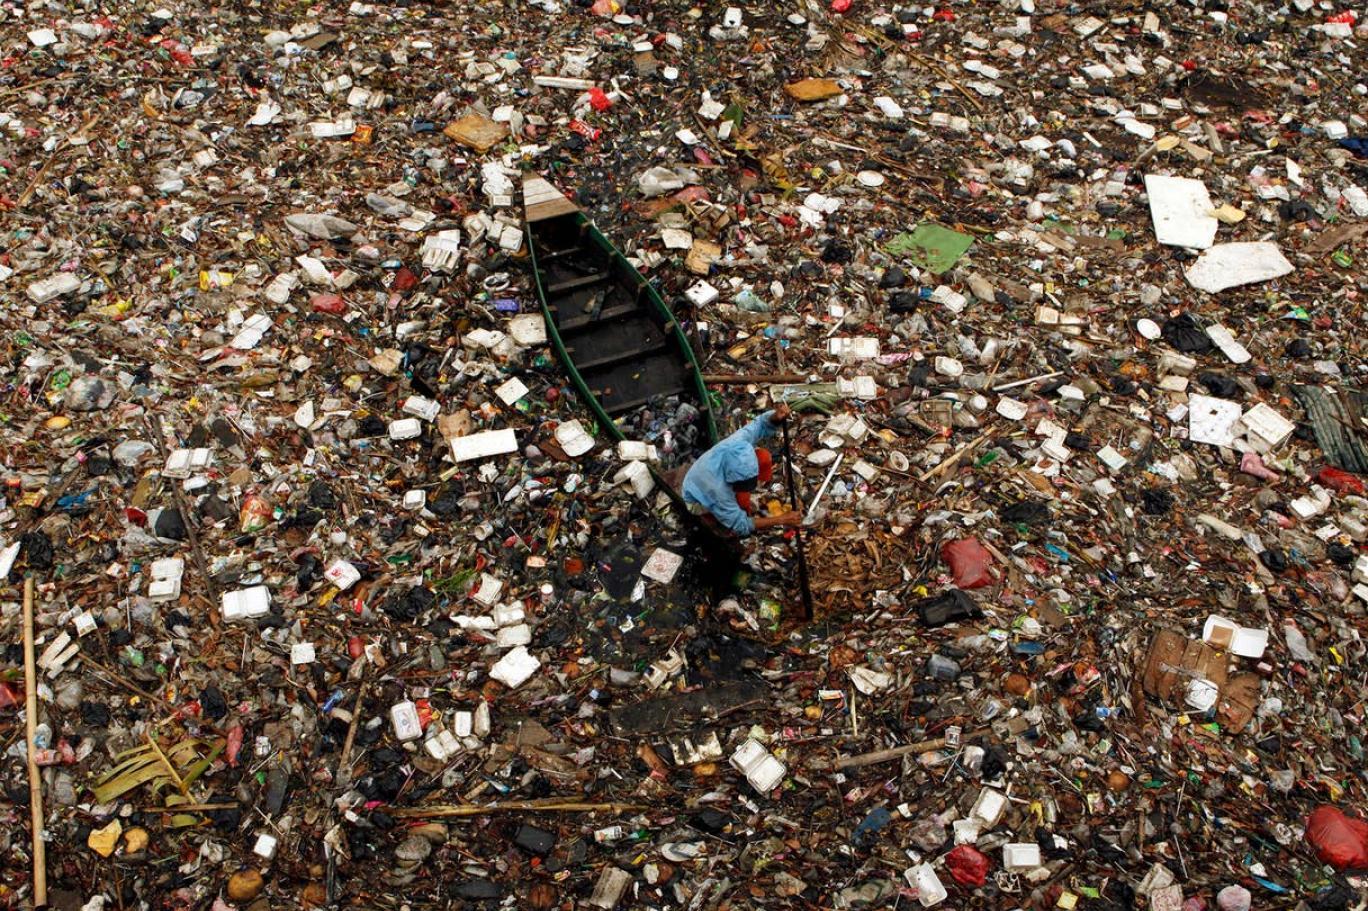 الفاو: انتشار التلوث البلاستيكي في التربة الزراعية يهدد الأمن الغذائي والصحة والبيئة